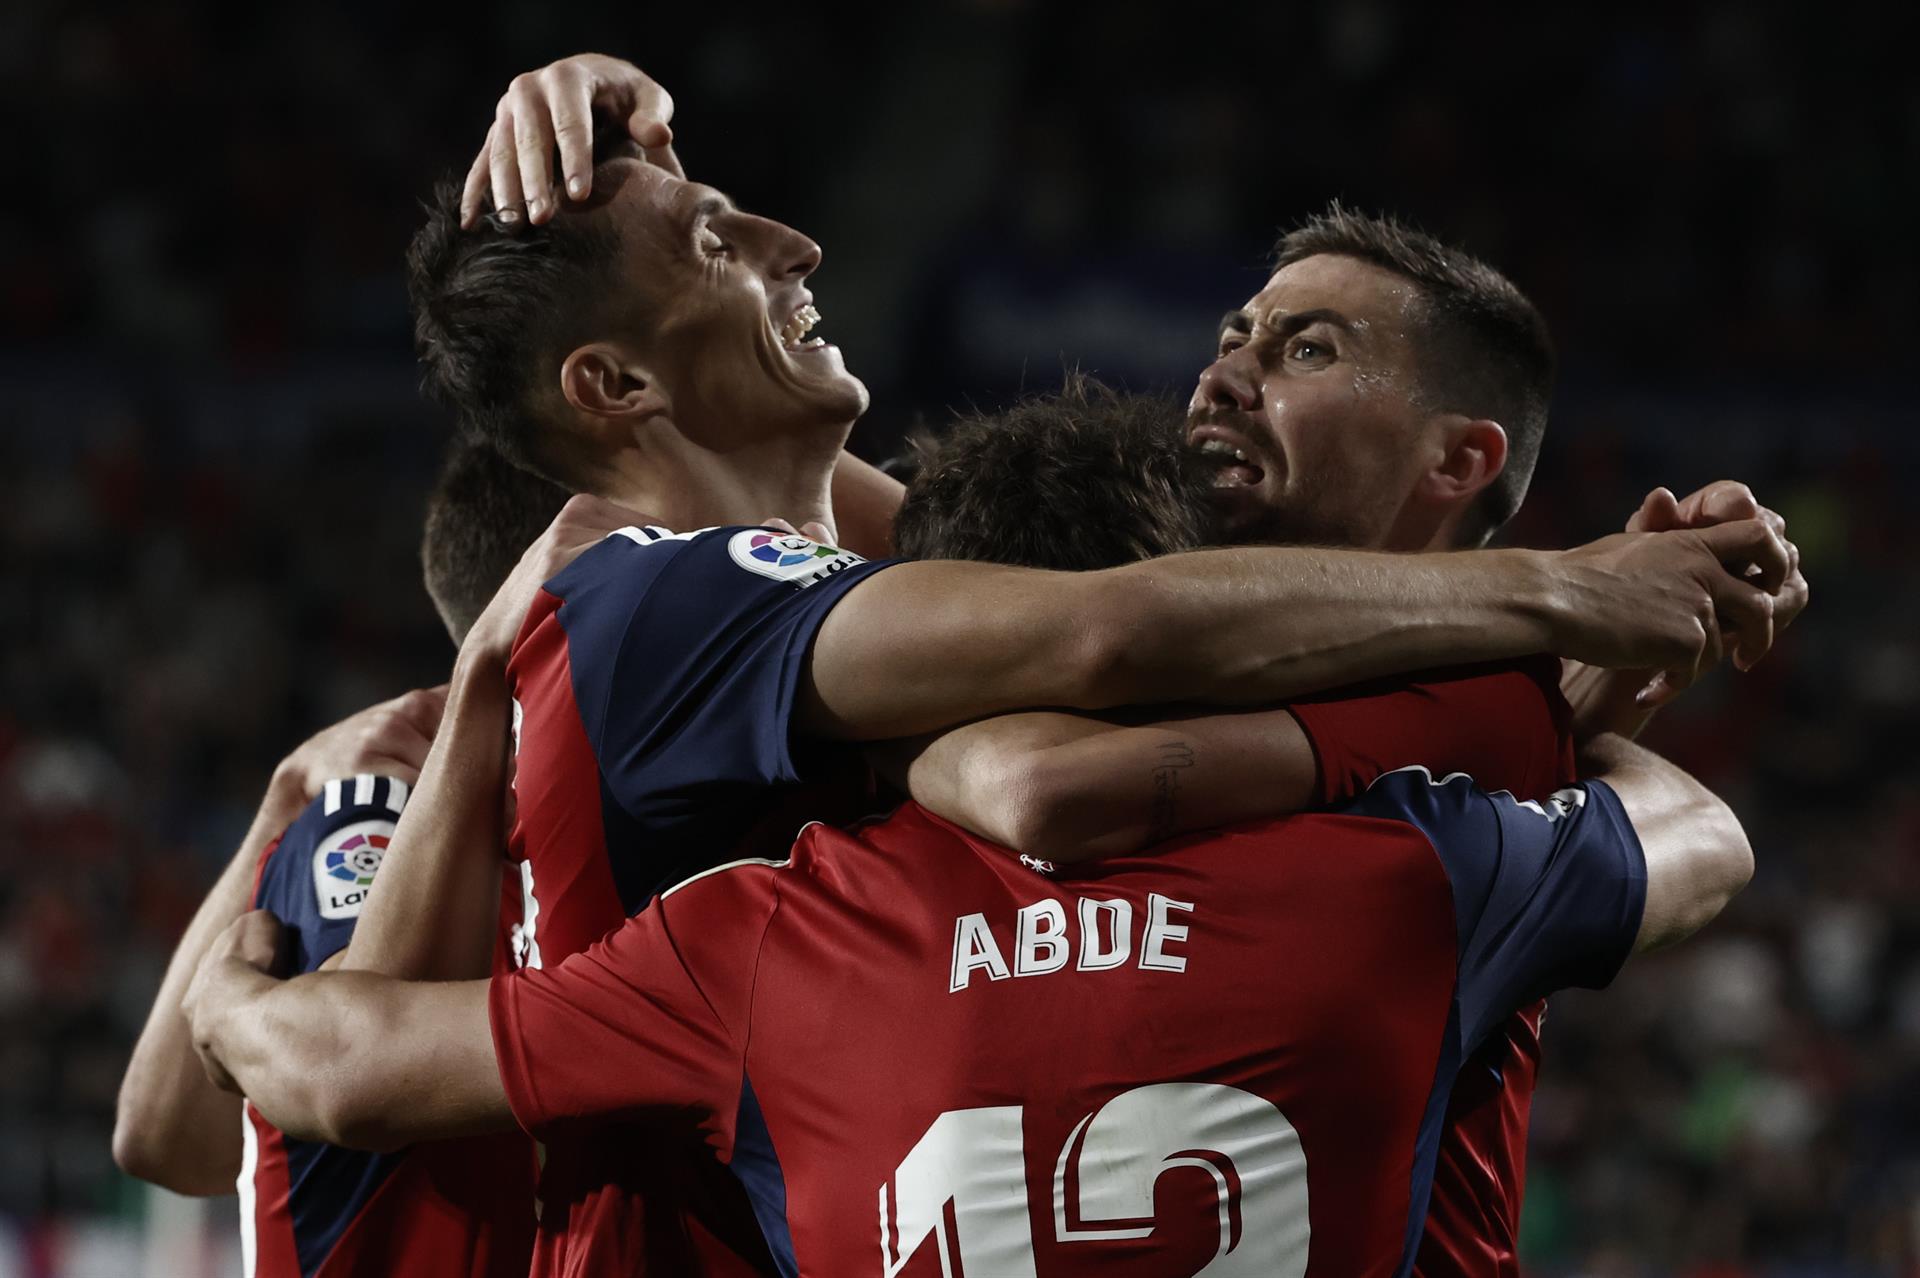 El delantero de Osasuna Ante Budimir (i) celebra con sus compañeros tras marcar ante el Espanyol, durante el partido de Liga en Primera División que disputan este jueves en el estadio de El Sadar, en Pamplona. EFE/Jesús Diges